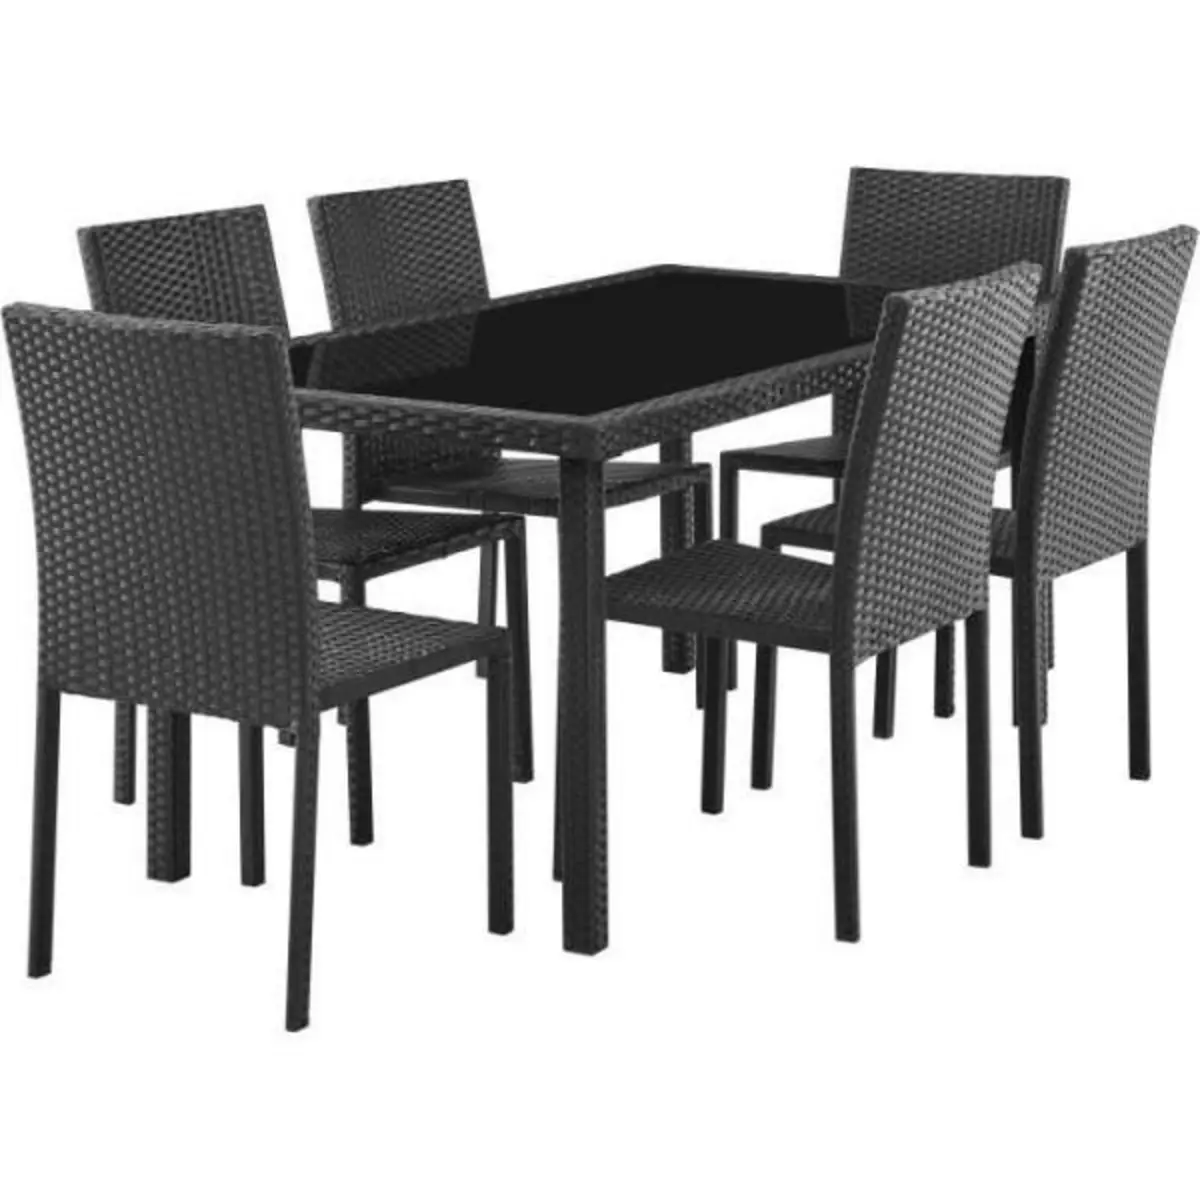 MARKET24 Ensemble repas de jardin - table en verre trempé et 6 chaises en résine tressée noir - Table 160x80x73 cm - Chaise : 44x54x88